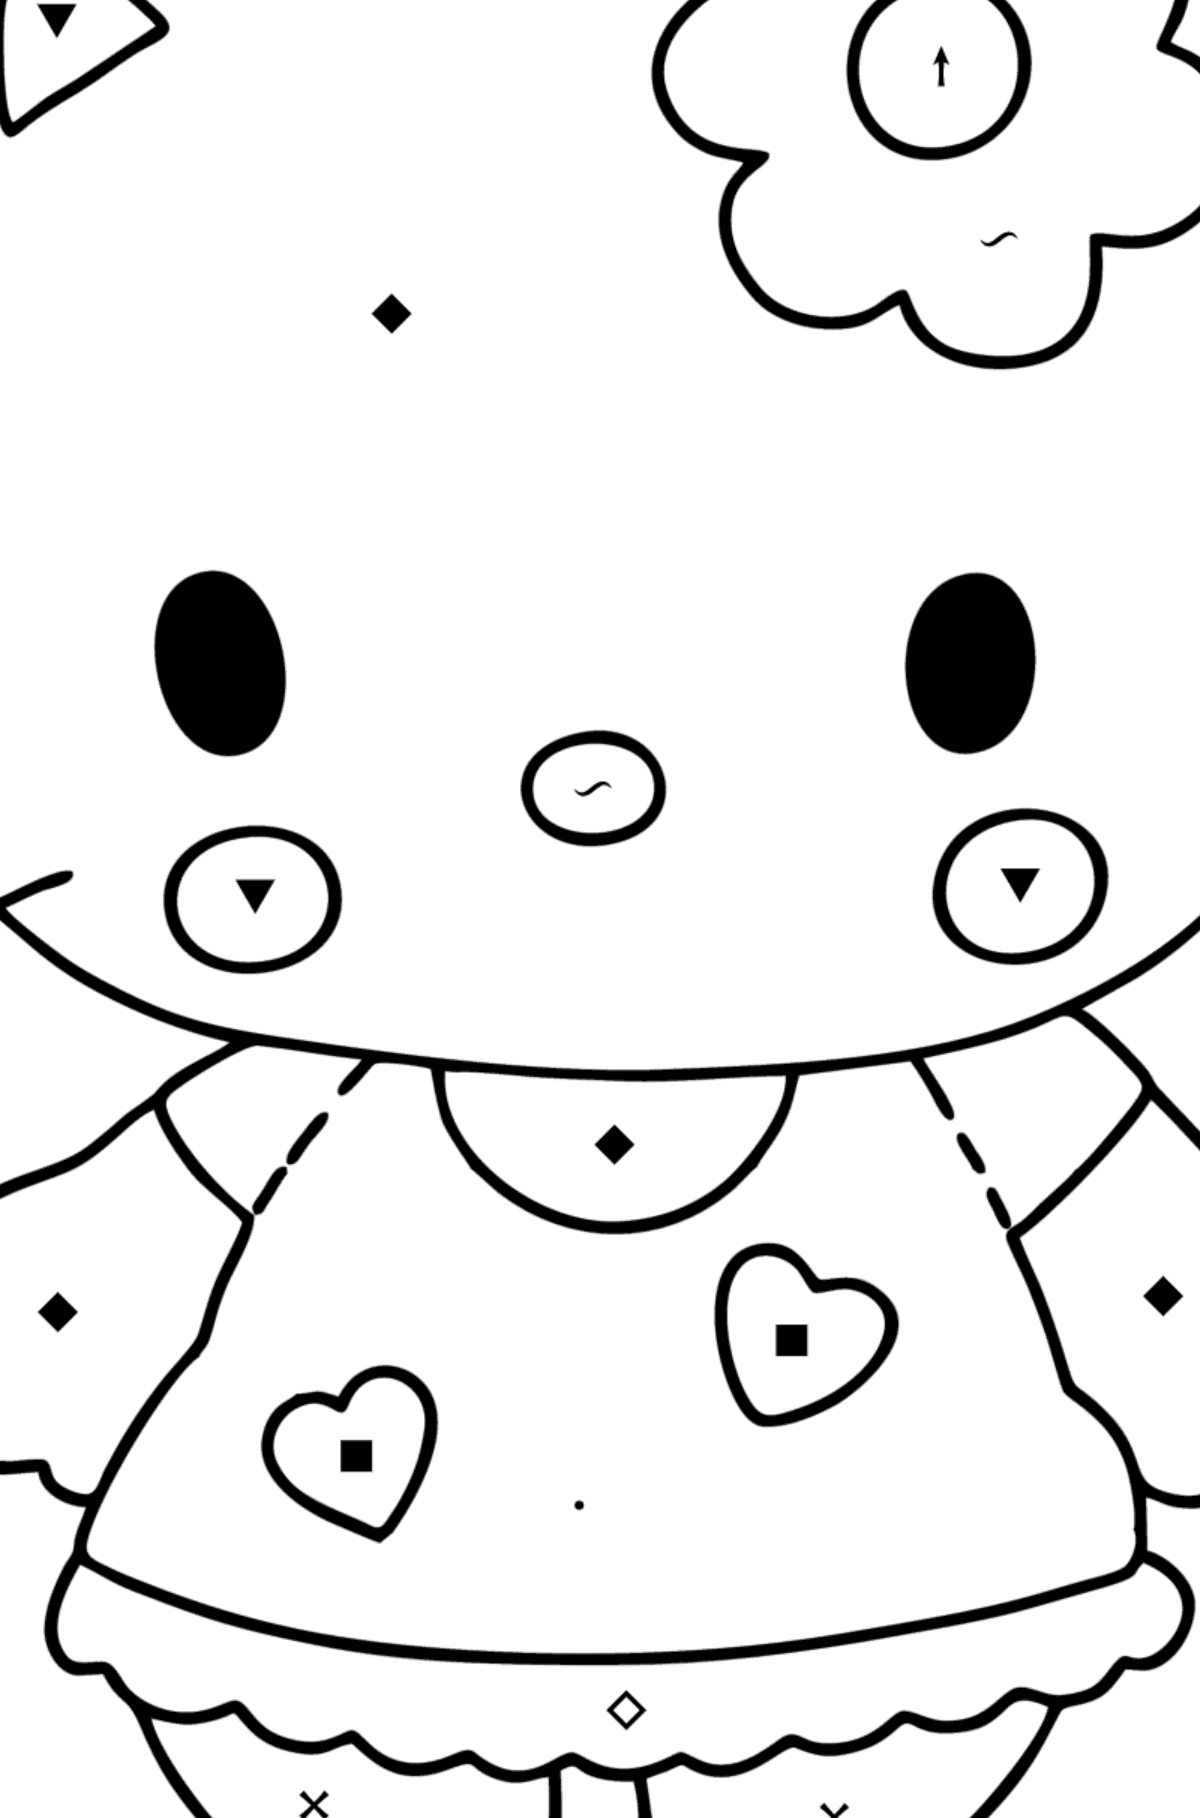 Boyama sayfası Hello Kitty - Sembollerle Boyama çocuklar için